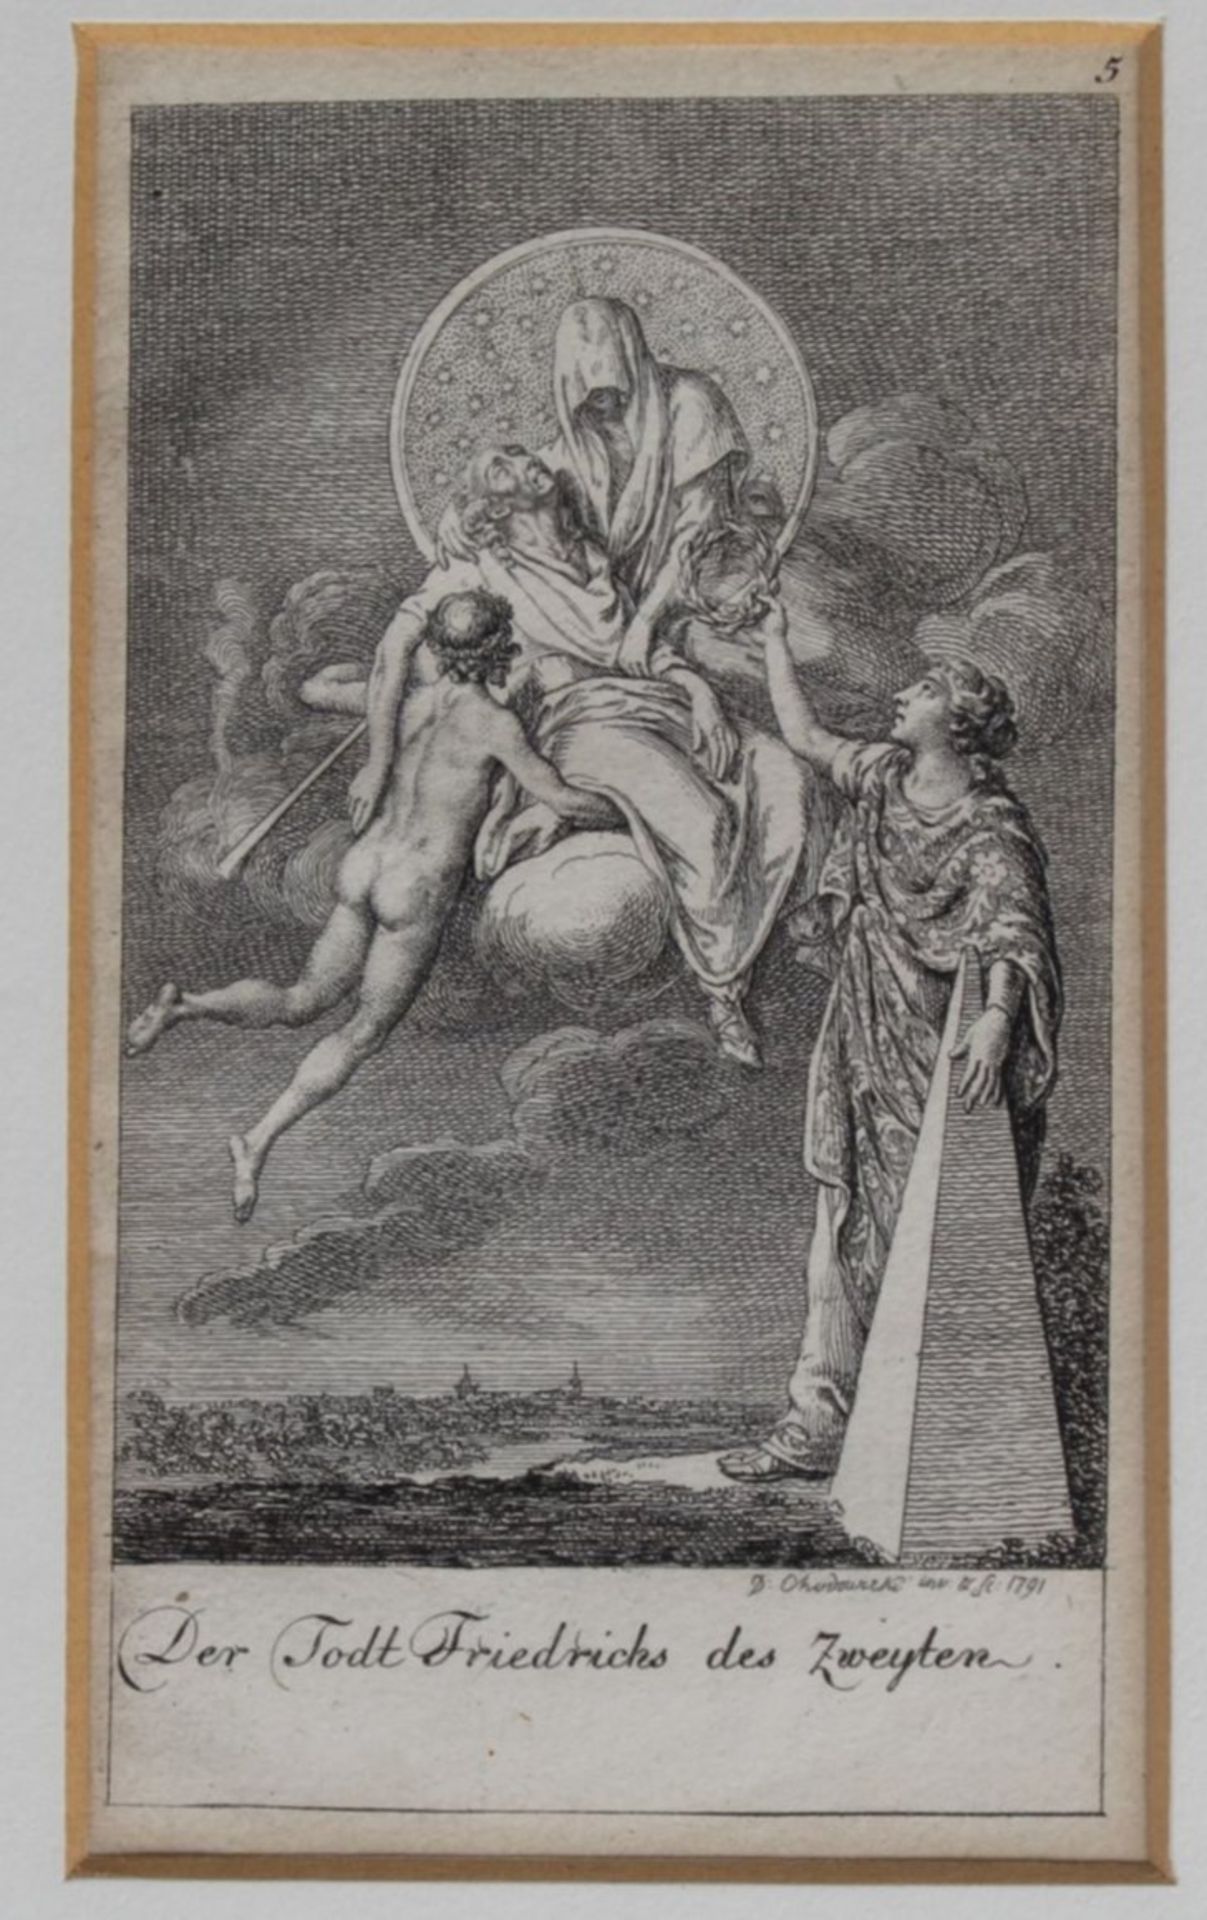 Daniel Nikolaus CHODOWIECKI, 1791 (1726-1801), Kupferstich "Der Todt Friedrich des zweyten", MG